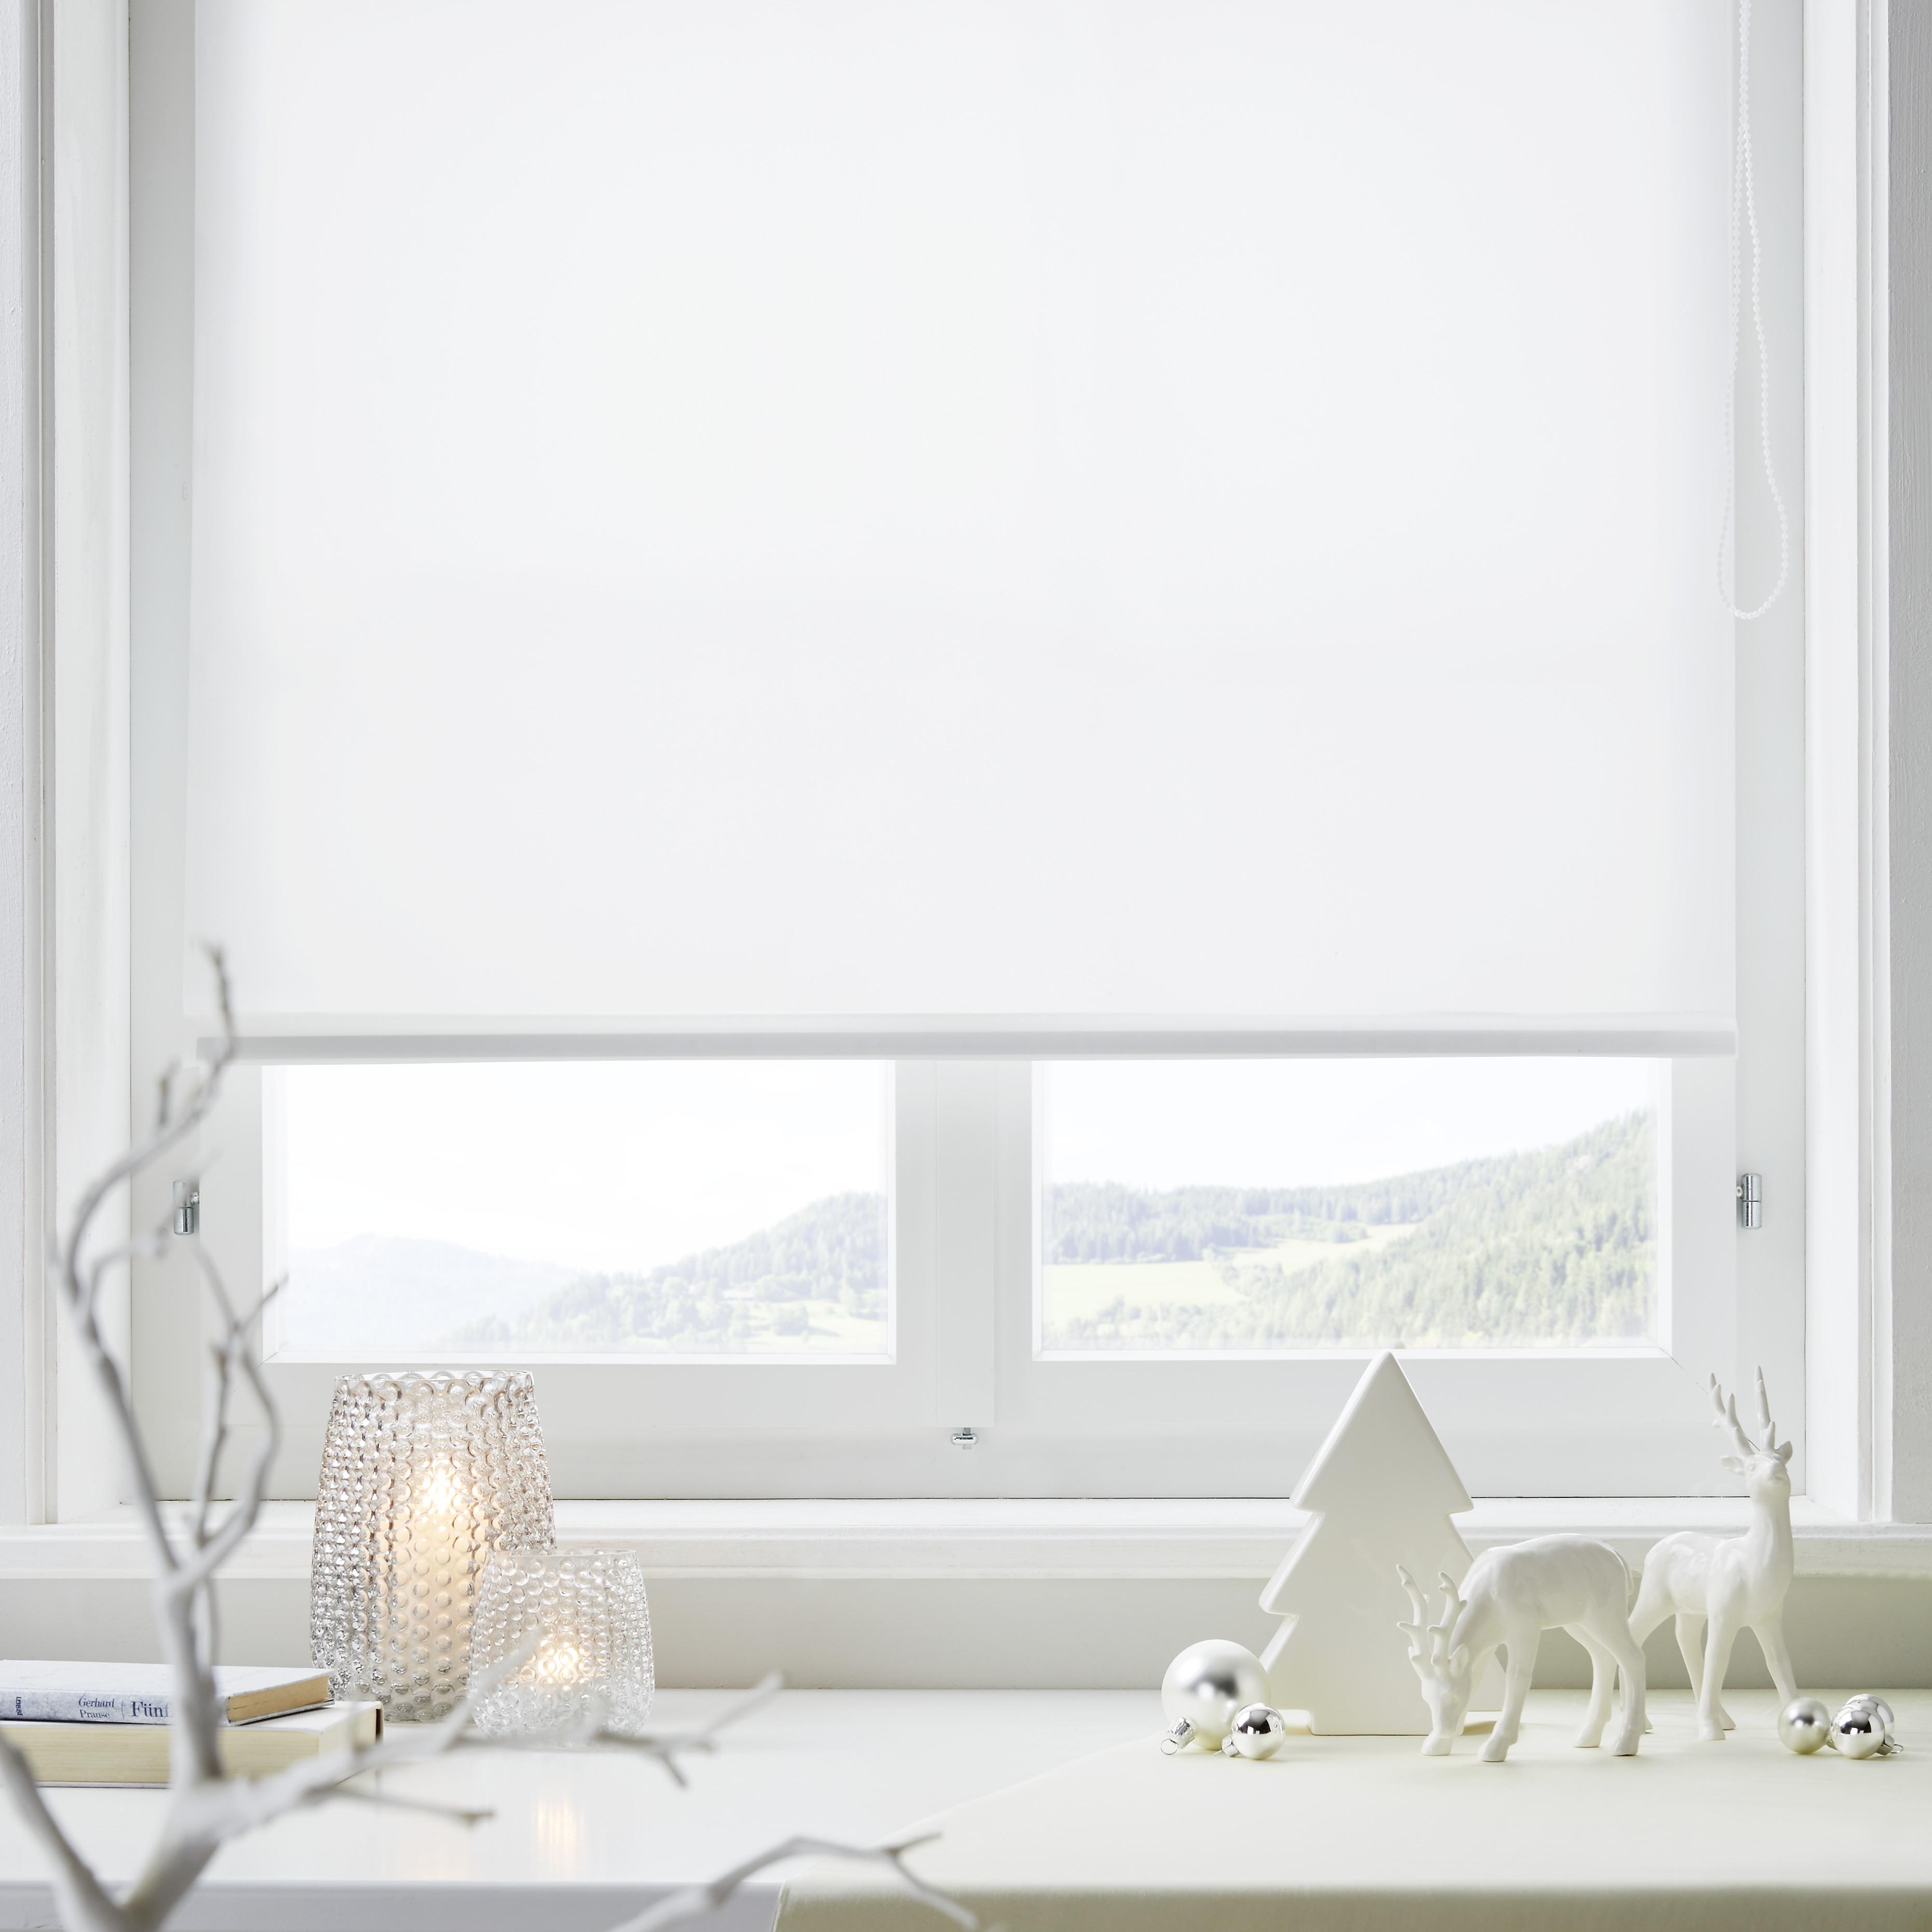 Klemmrollo Thermo in Weiß ca. 45x150cm - Weiß, Textil (45/150cm) - Premium Living